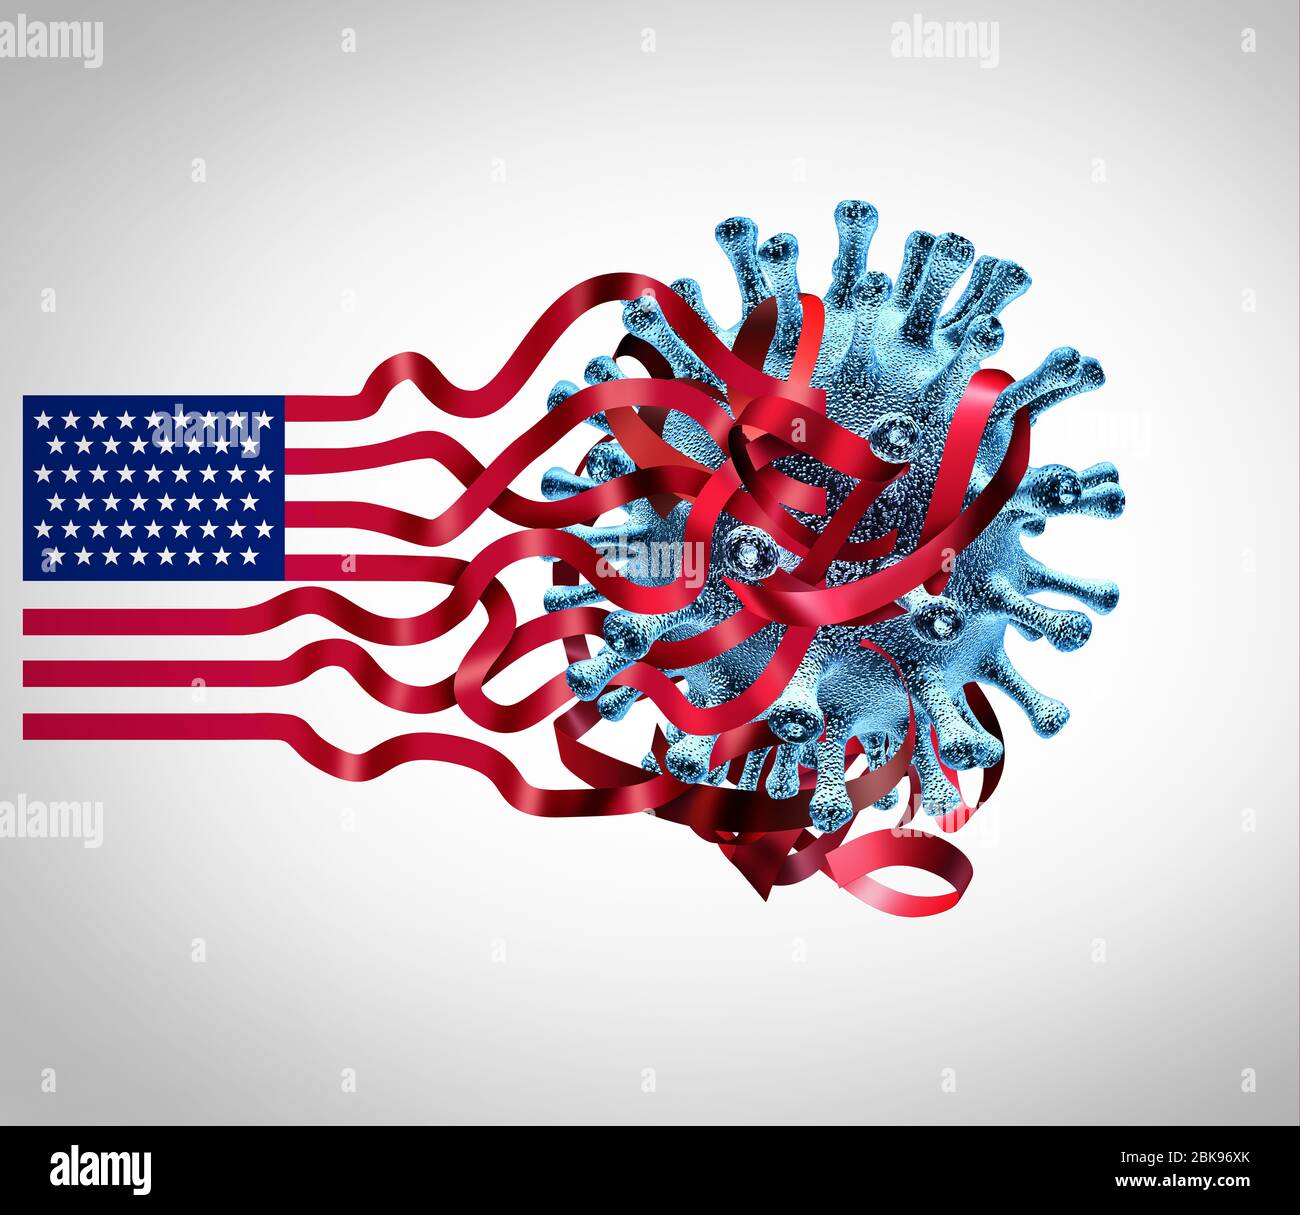 LE sfide DEL coronavirus DEGLI STATI UNITI e le edizioni di infezione del virus del covid-19 degli Stati Uniti come crisi americana di sanità con la bandiera degli Stati Uniti impigliata. Foto Stock